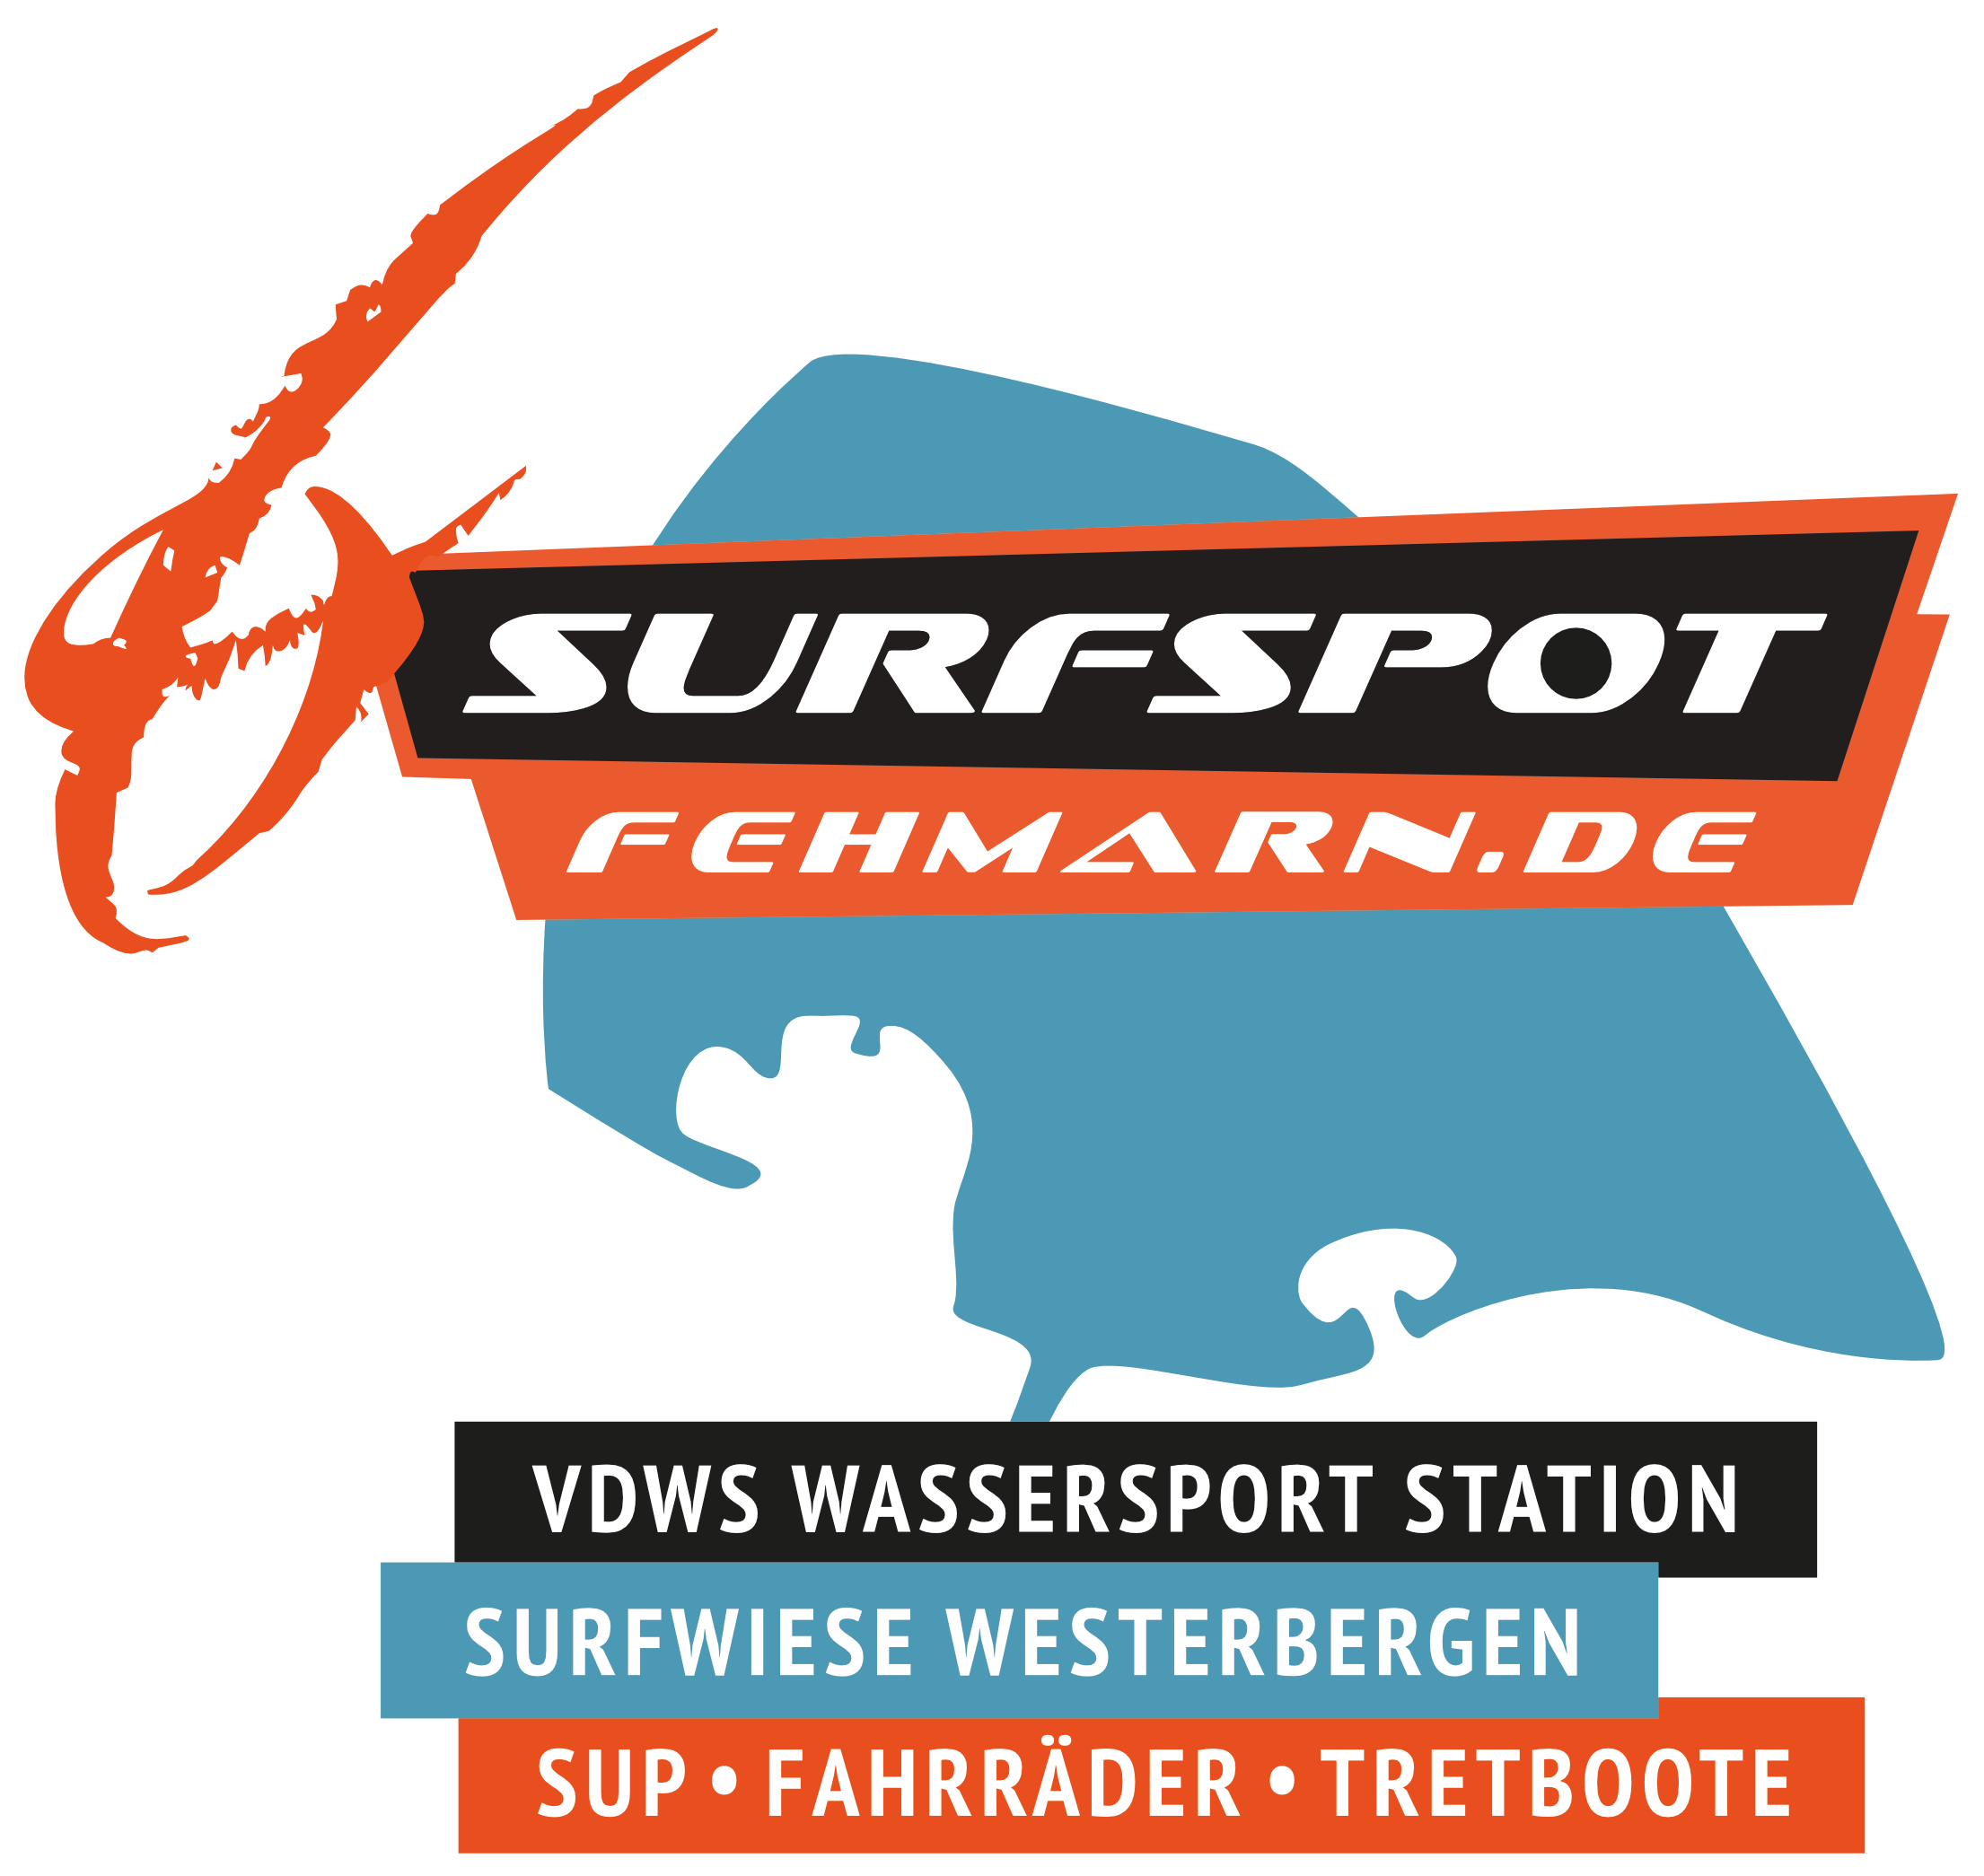 Surfspot Fehmarn VDWS Surfschule und Surf Equipment Verleih in Lemkenhafen auf Fehmarn